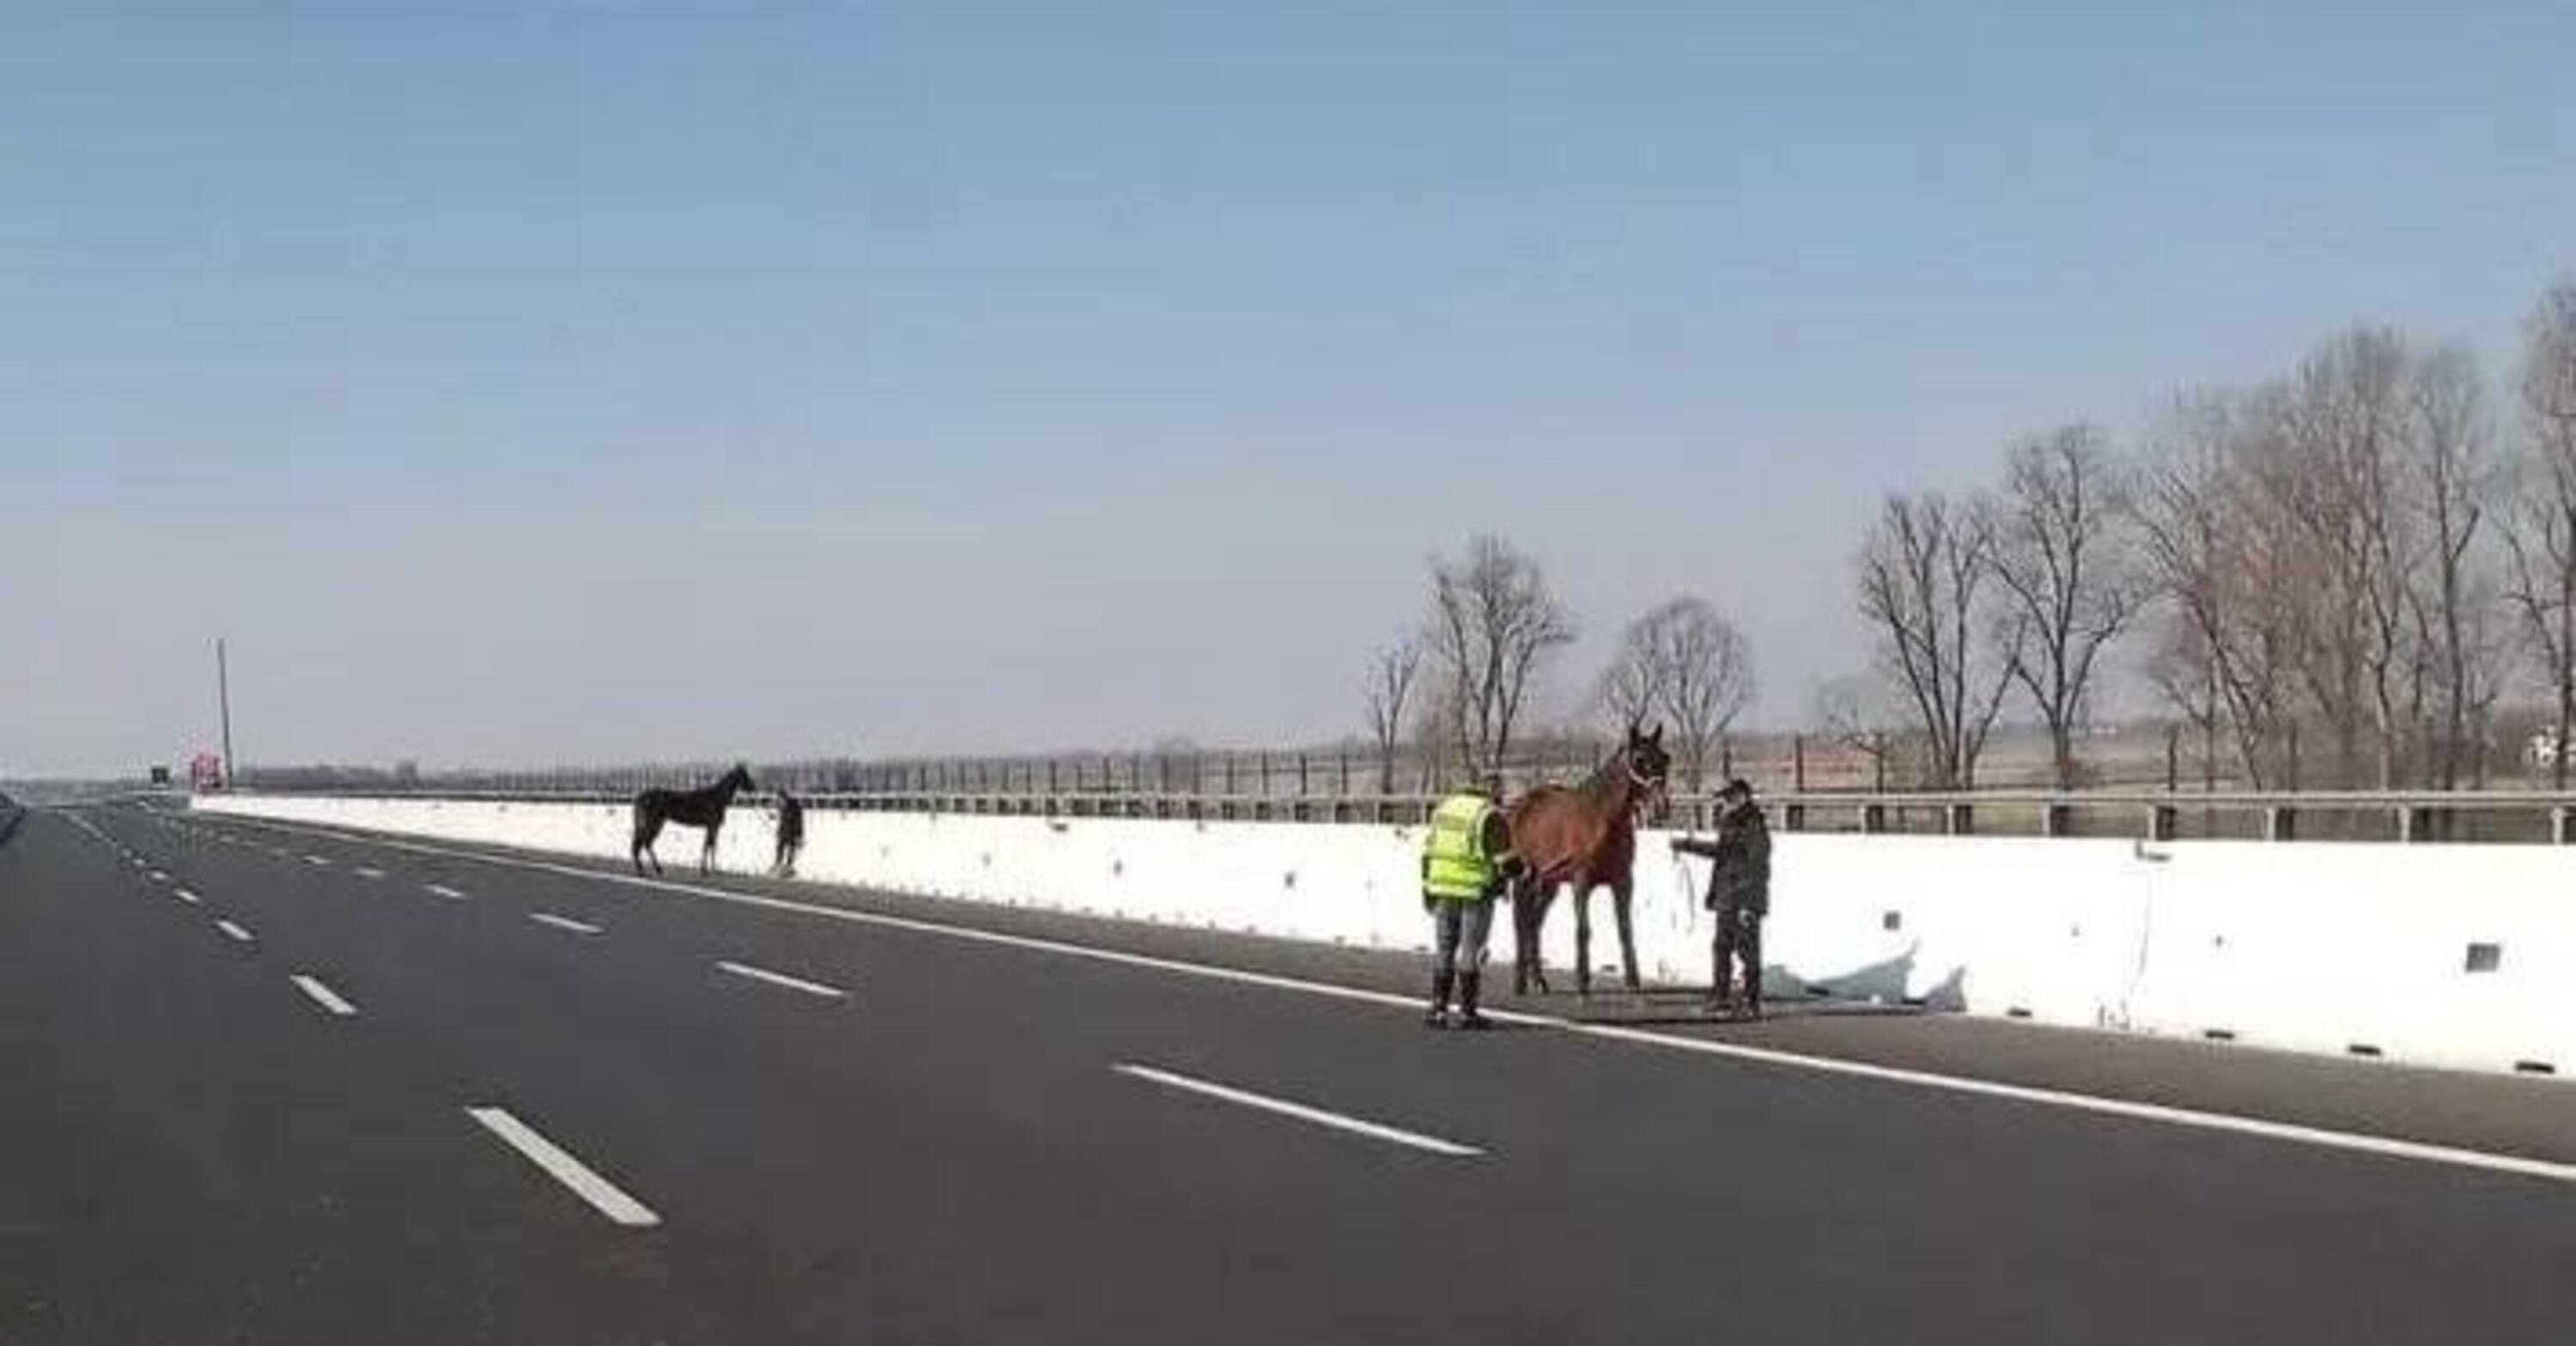 Incidente sulla A4 coinvolge un trasporto animali: blocco del traffico con cavalli fuggiti